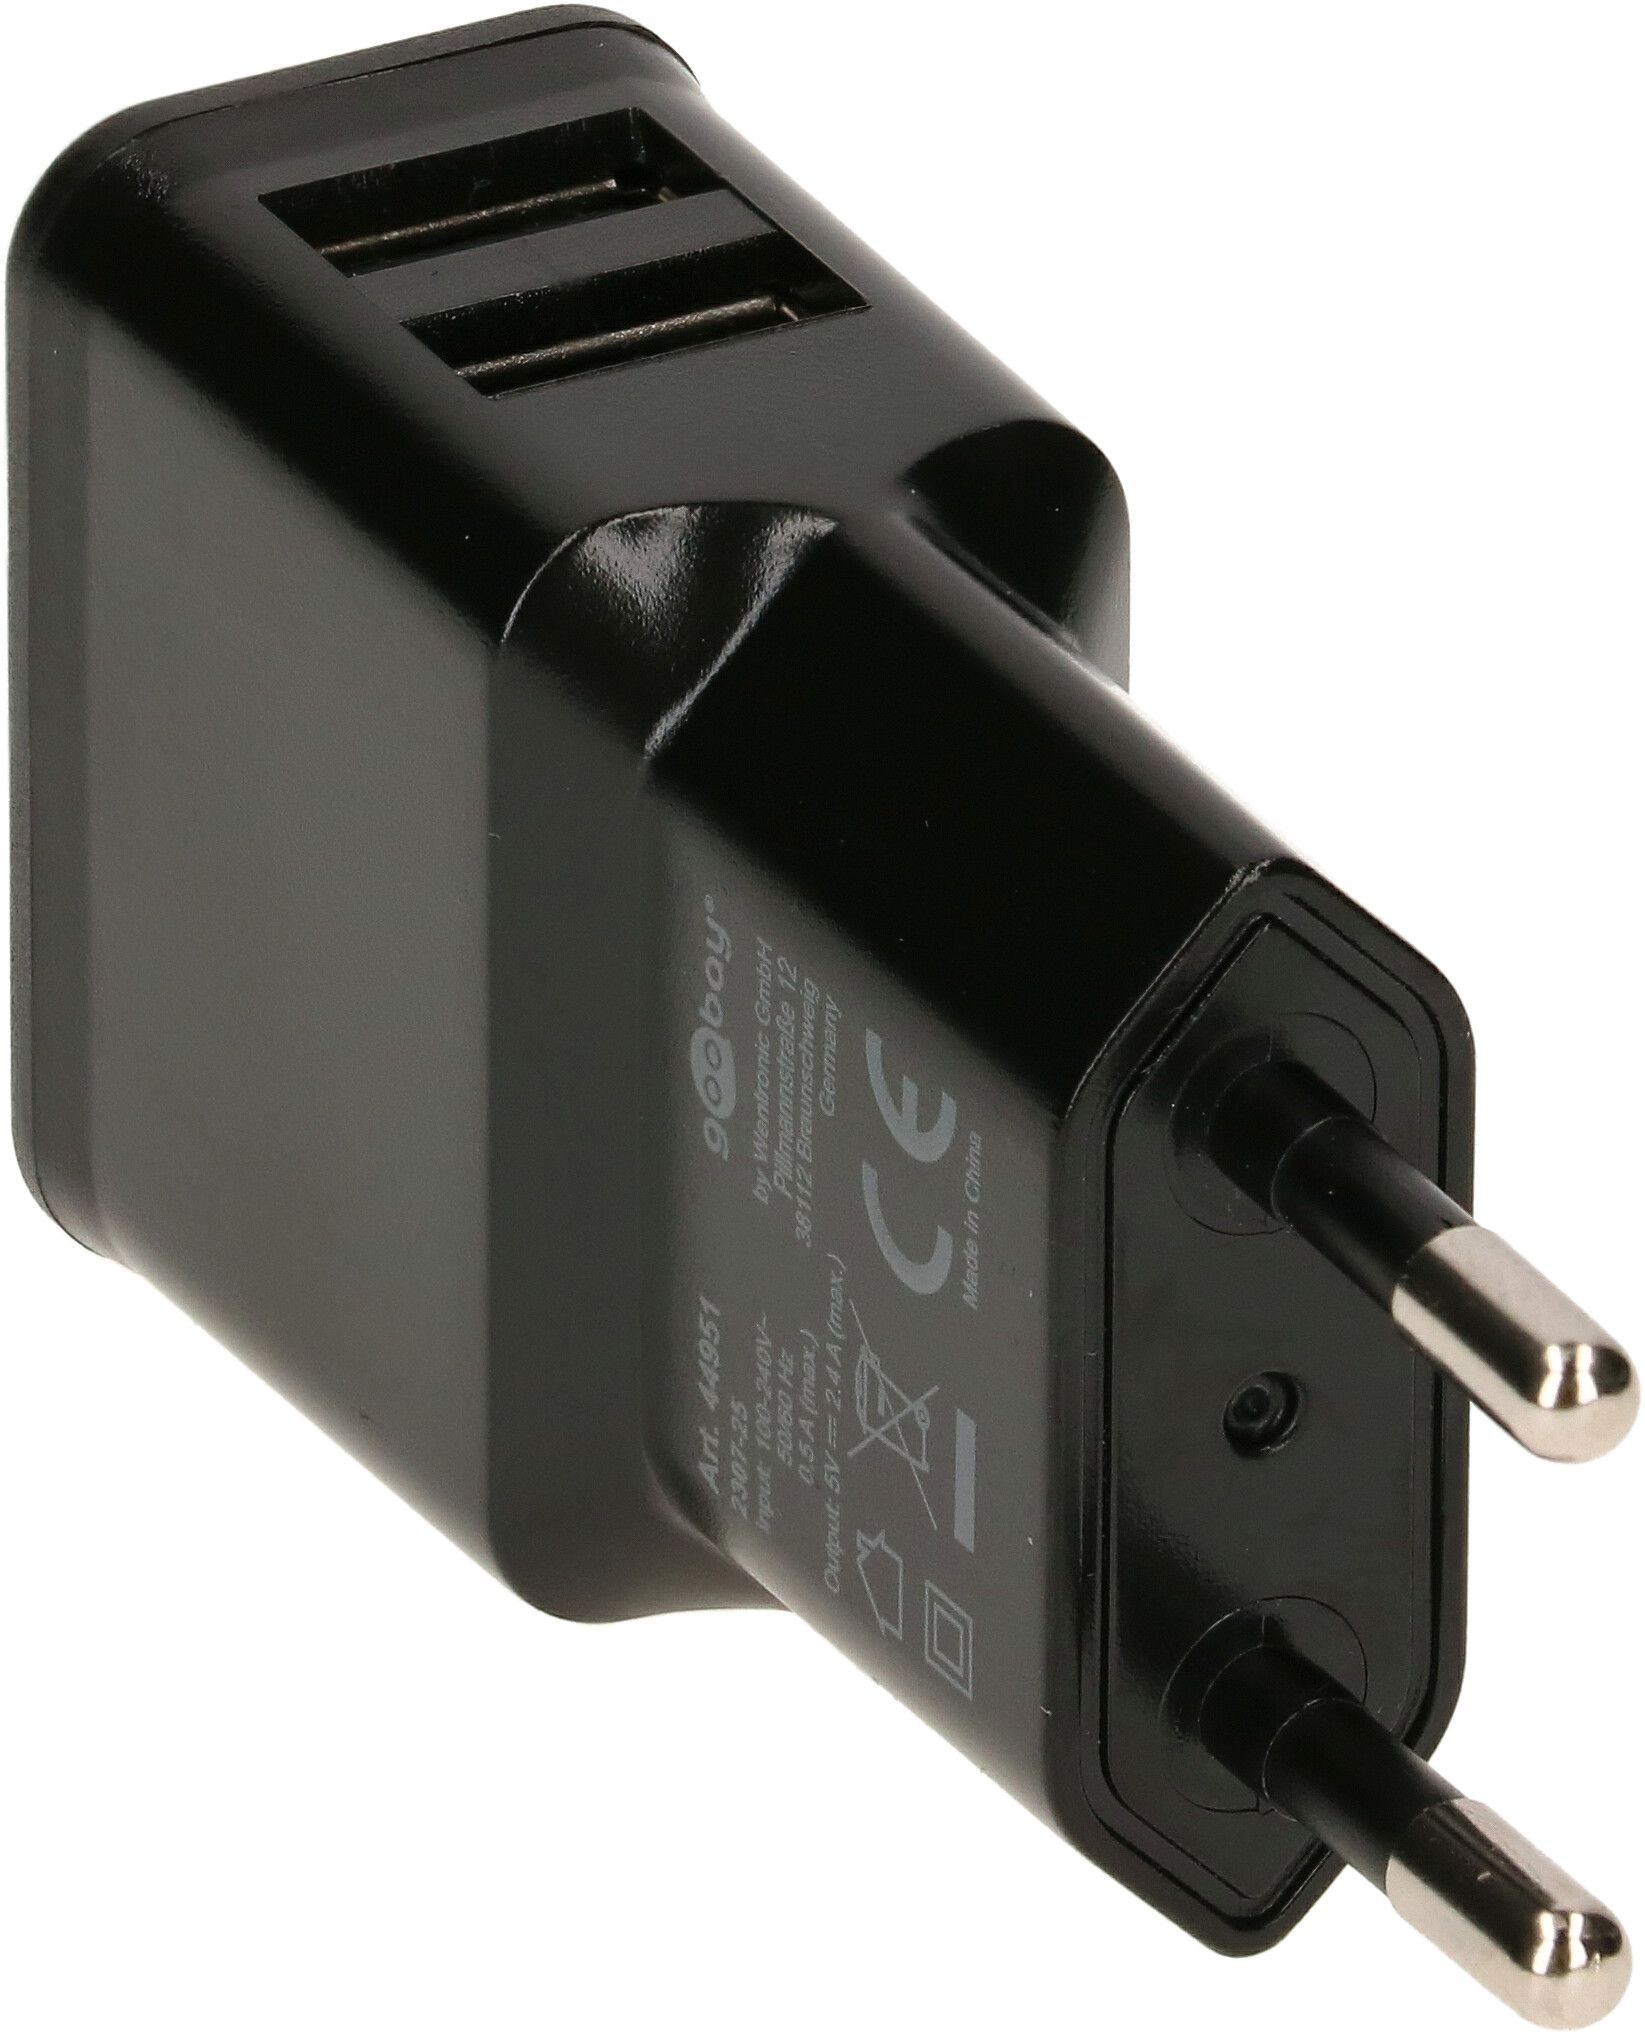 Dual USB-Ladegerät 2.4 A schwarz - MAX HAURI AG